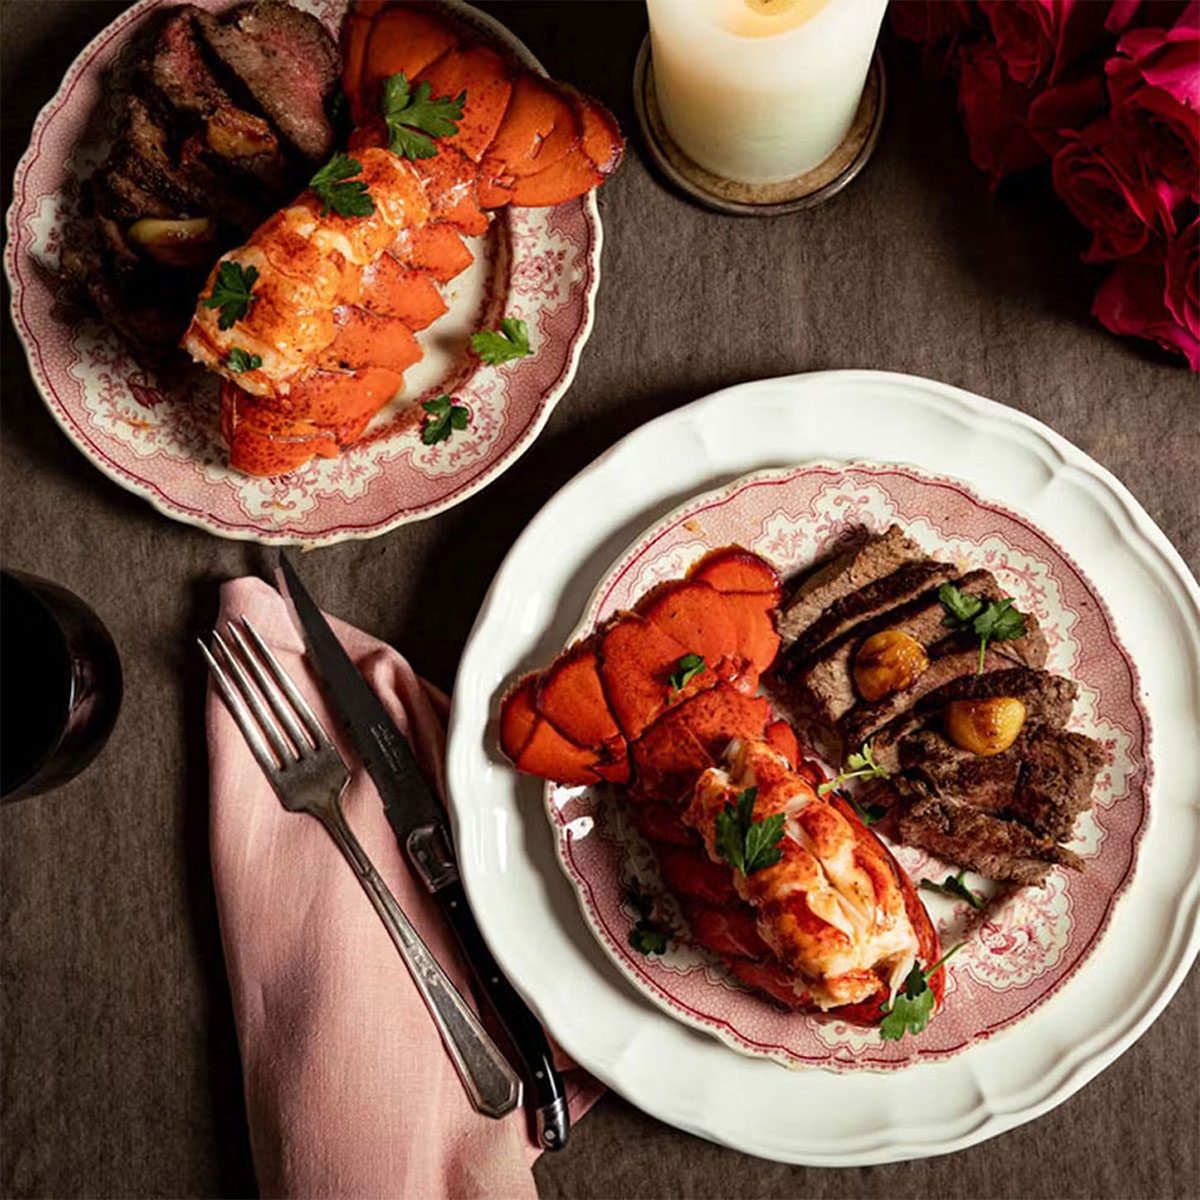 Lobster + Steak Surf & Turf Dinner For 2 